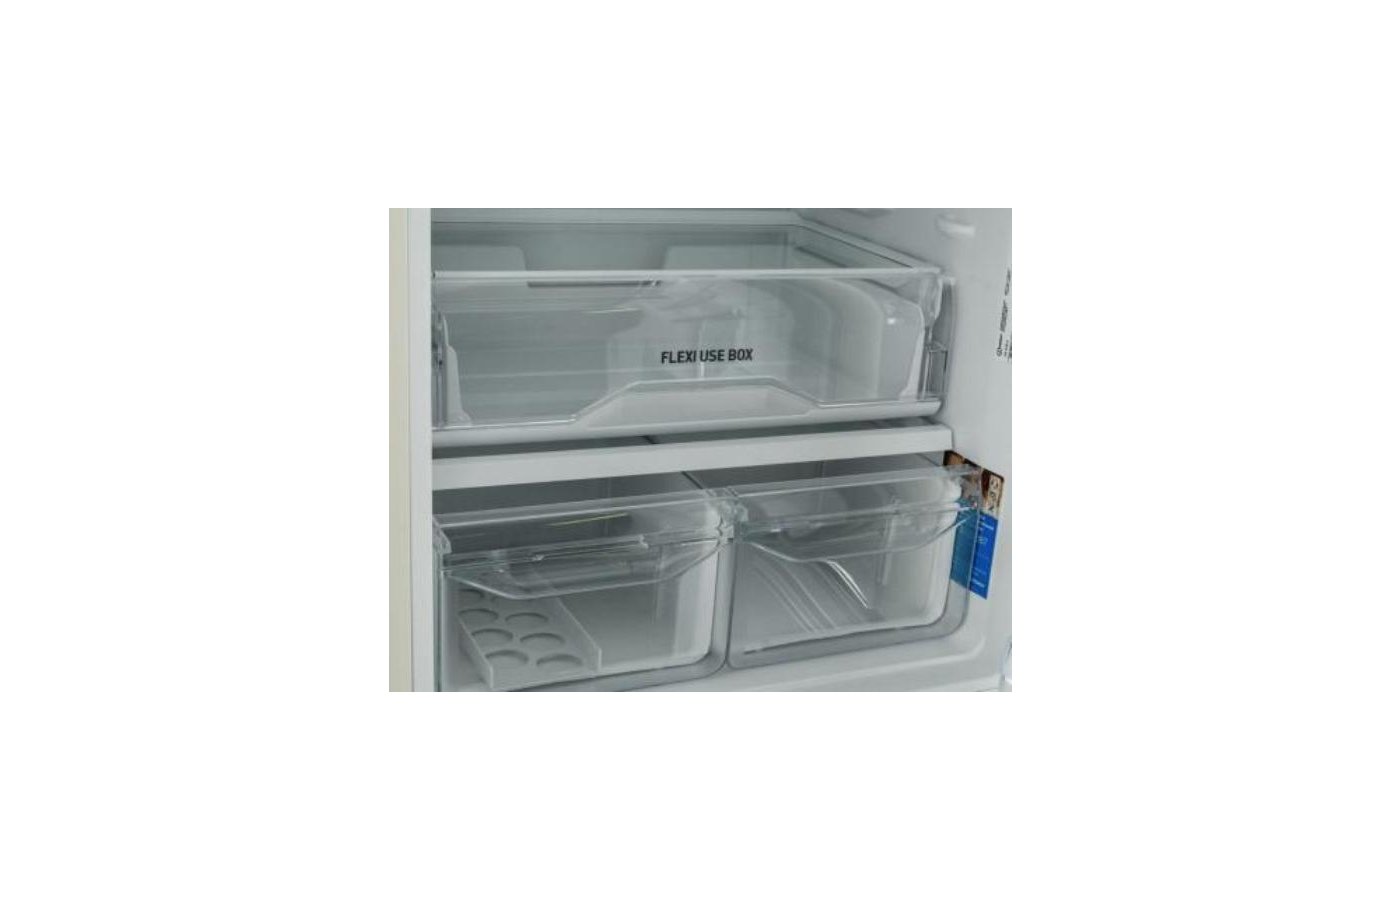 Холодильник индезит отзывы специалистов. Индезит itr4180 e. Холодильник Индезит Flexi use Box.